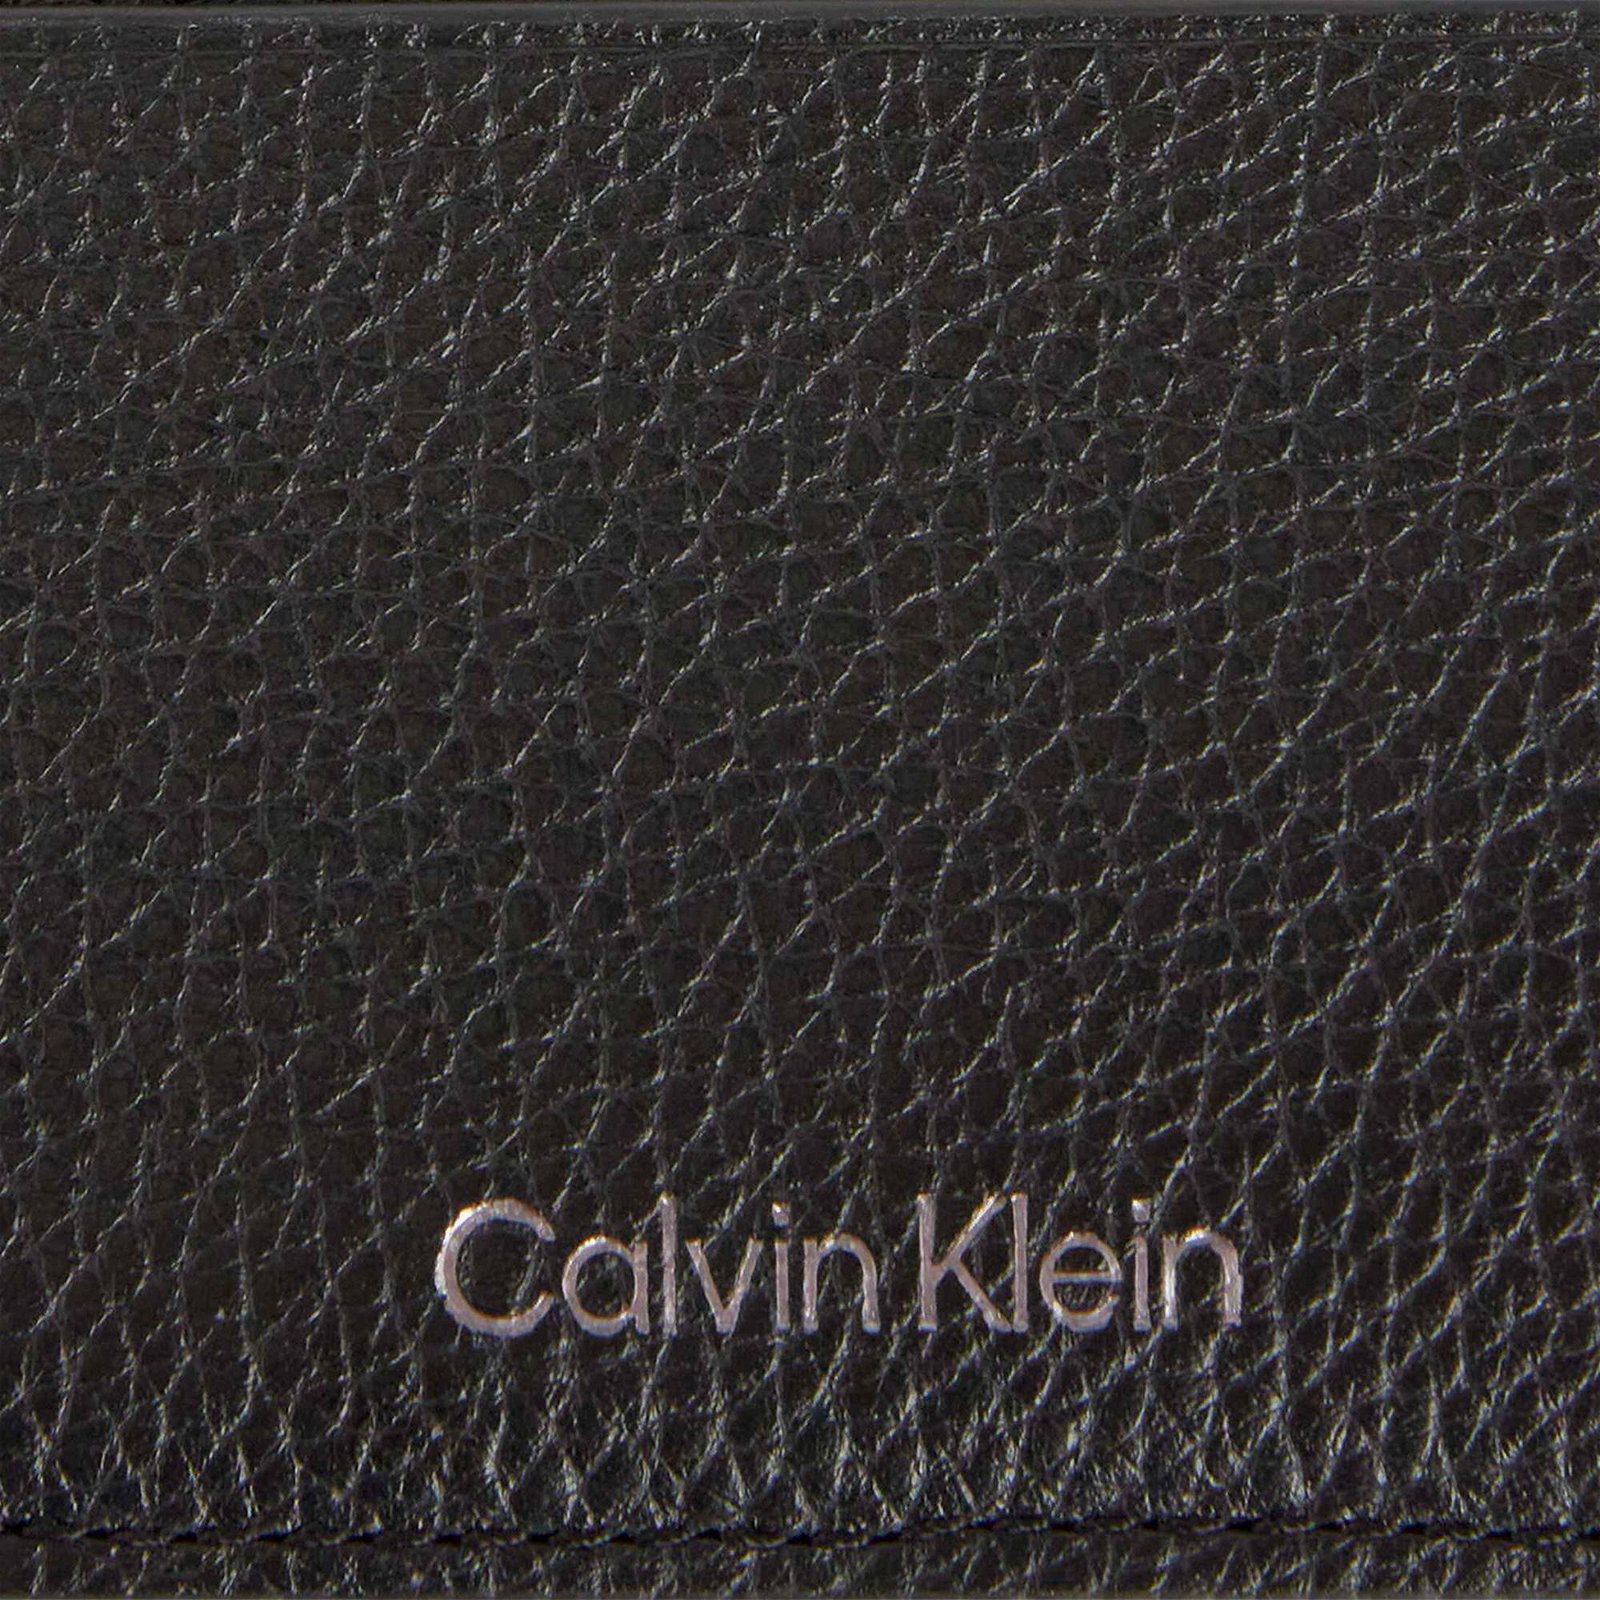 Calvin Klein Erkek Siyah Cüzdan